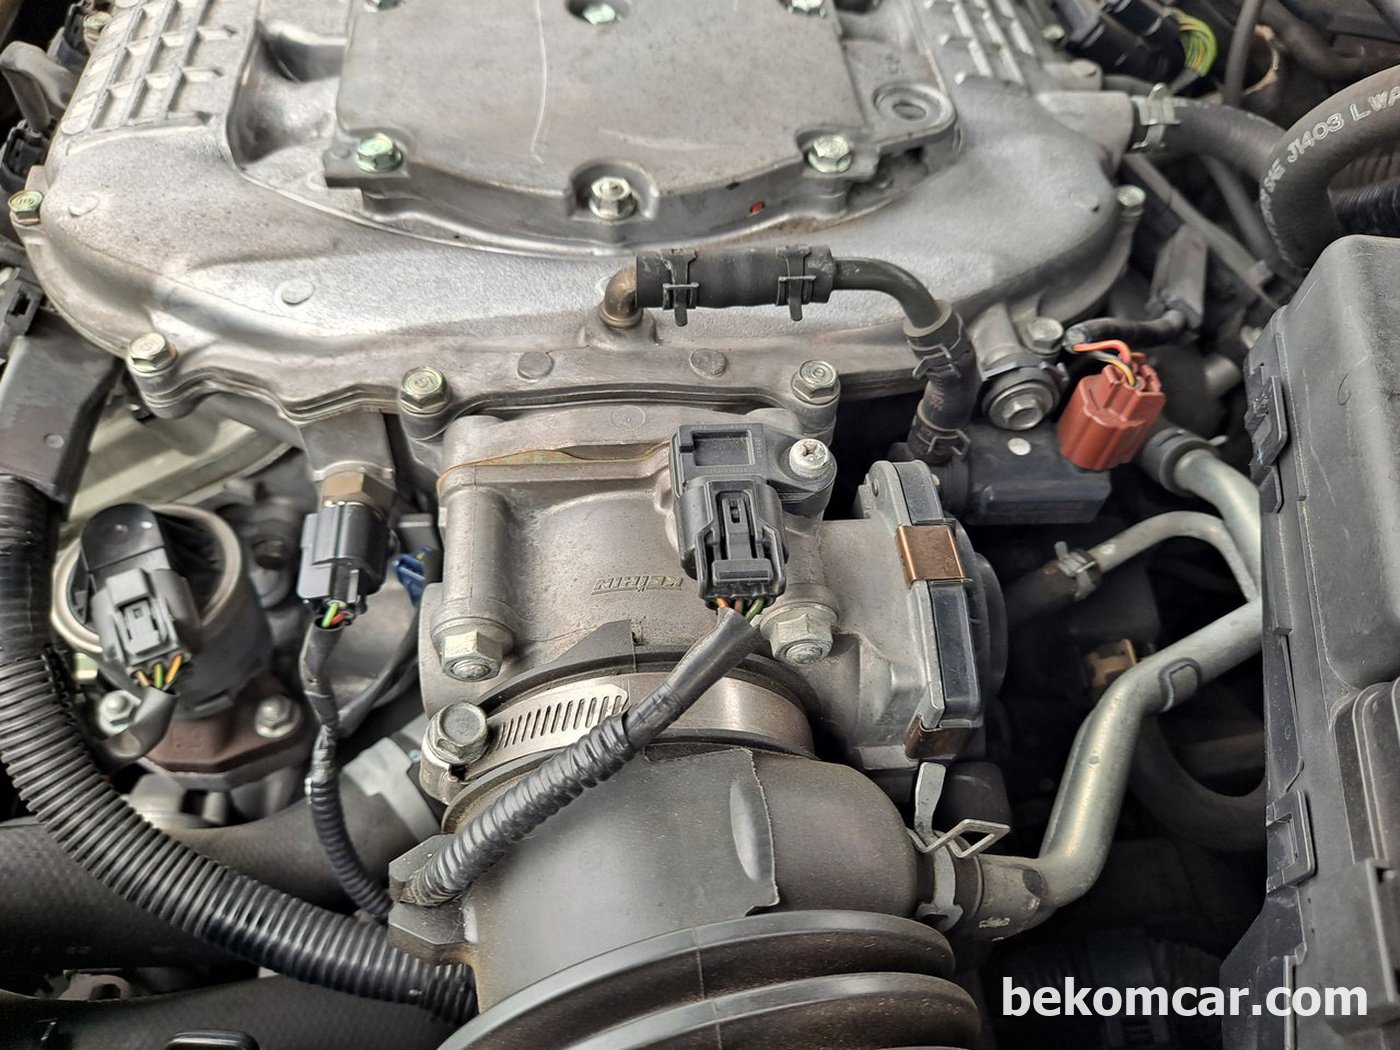 퍼지벨브 및 MAP센서등 특이사항 점검|ベコムカー (bekomcar)